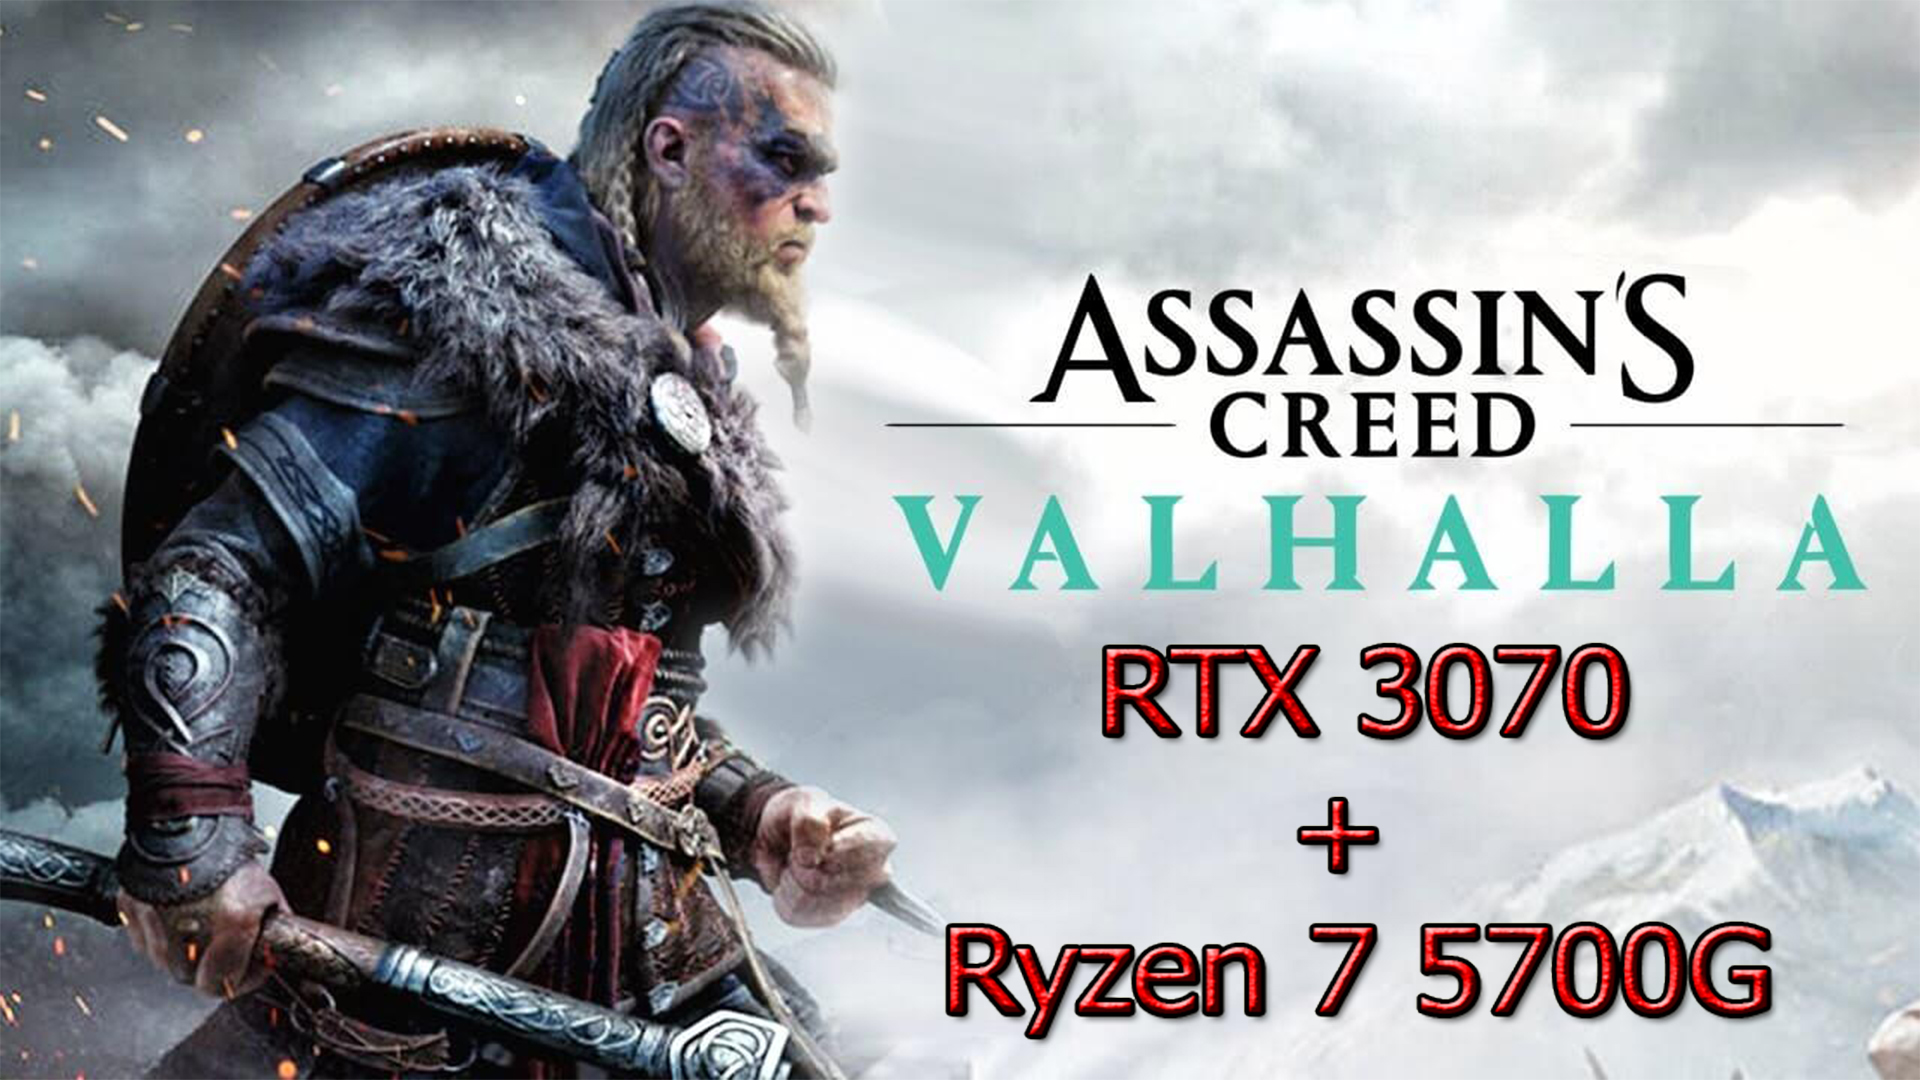 Assassins Creed Valhalla RTX 3070+Ryzen 7 5700G